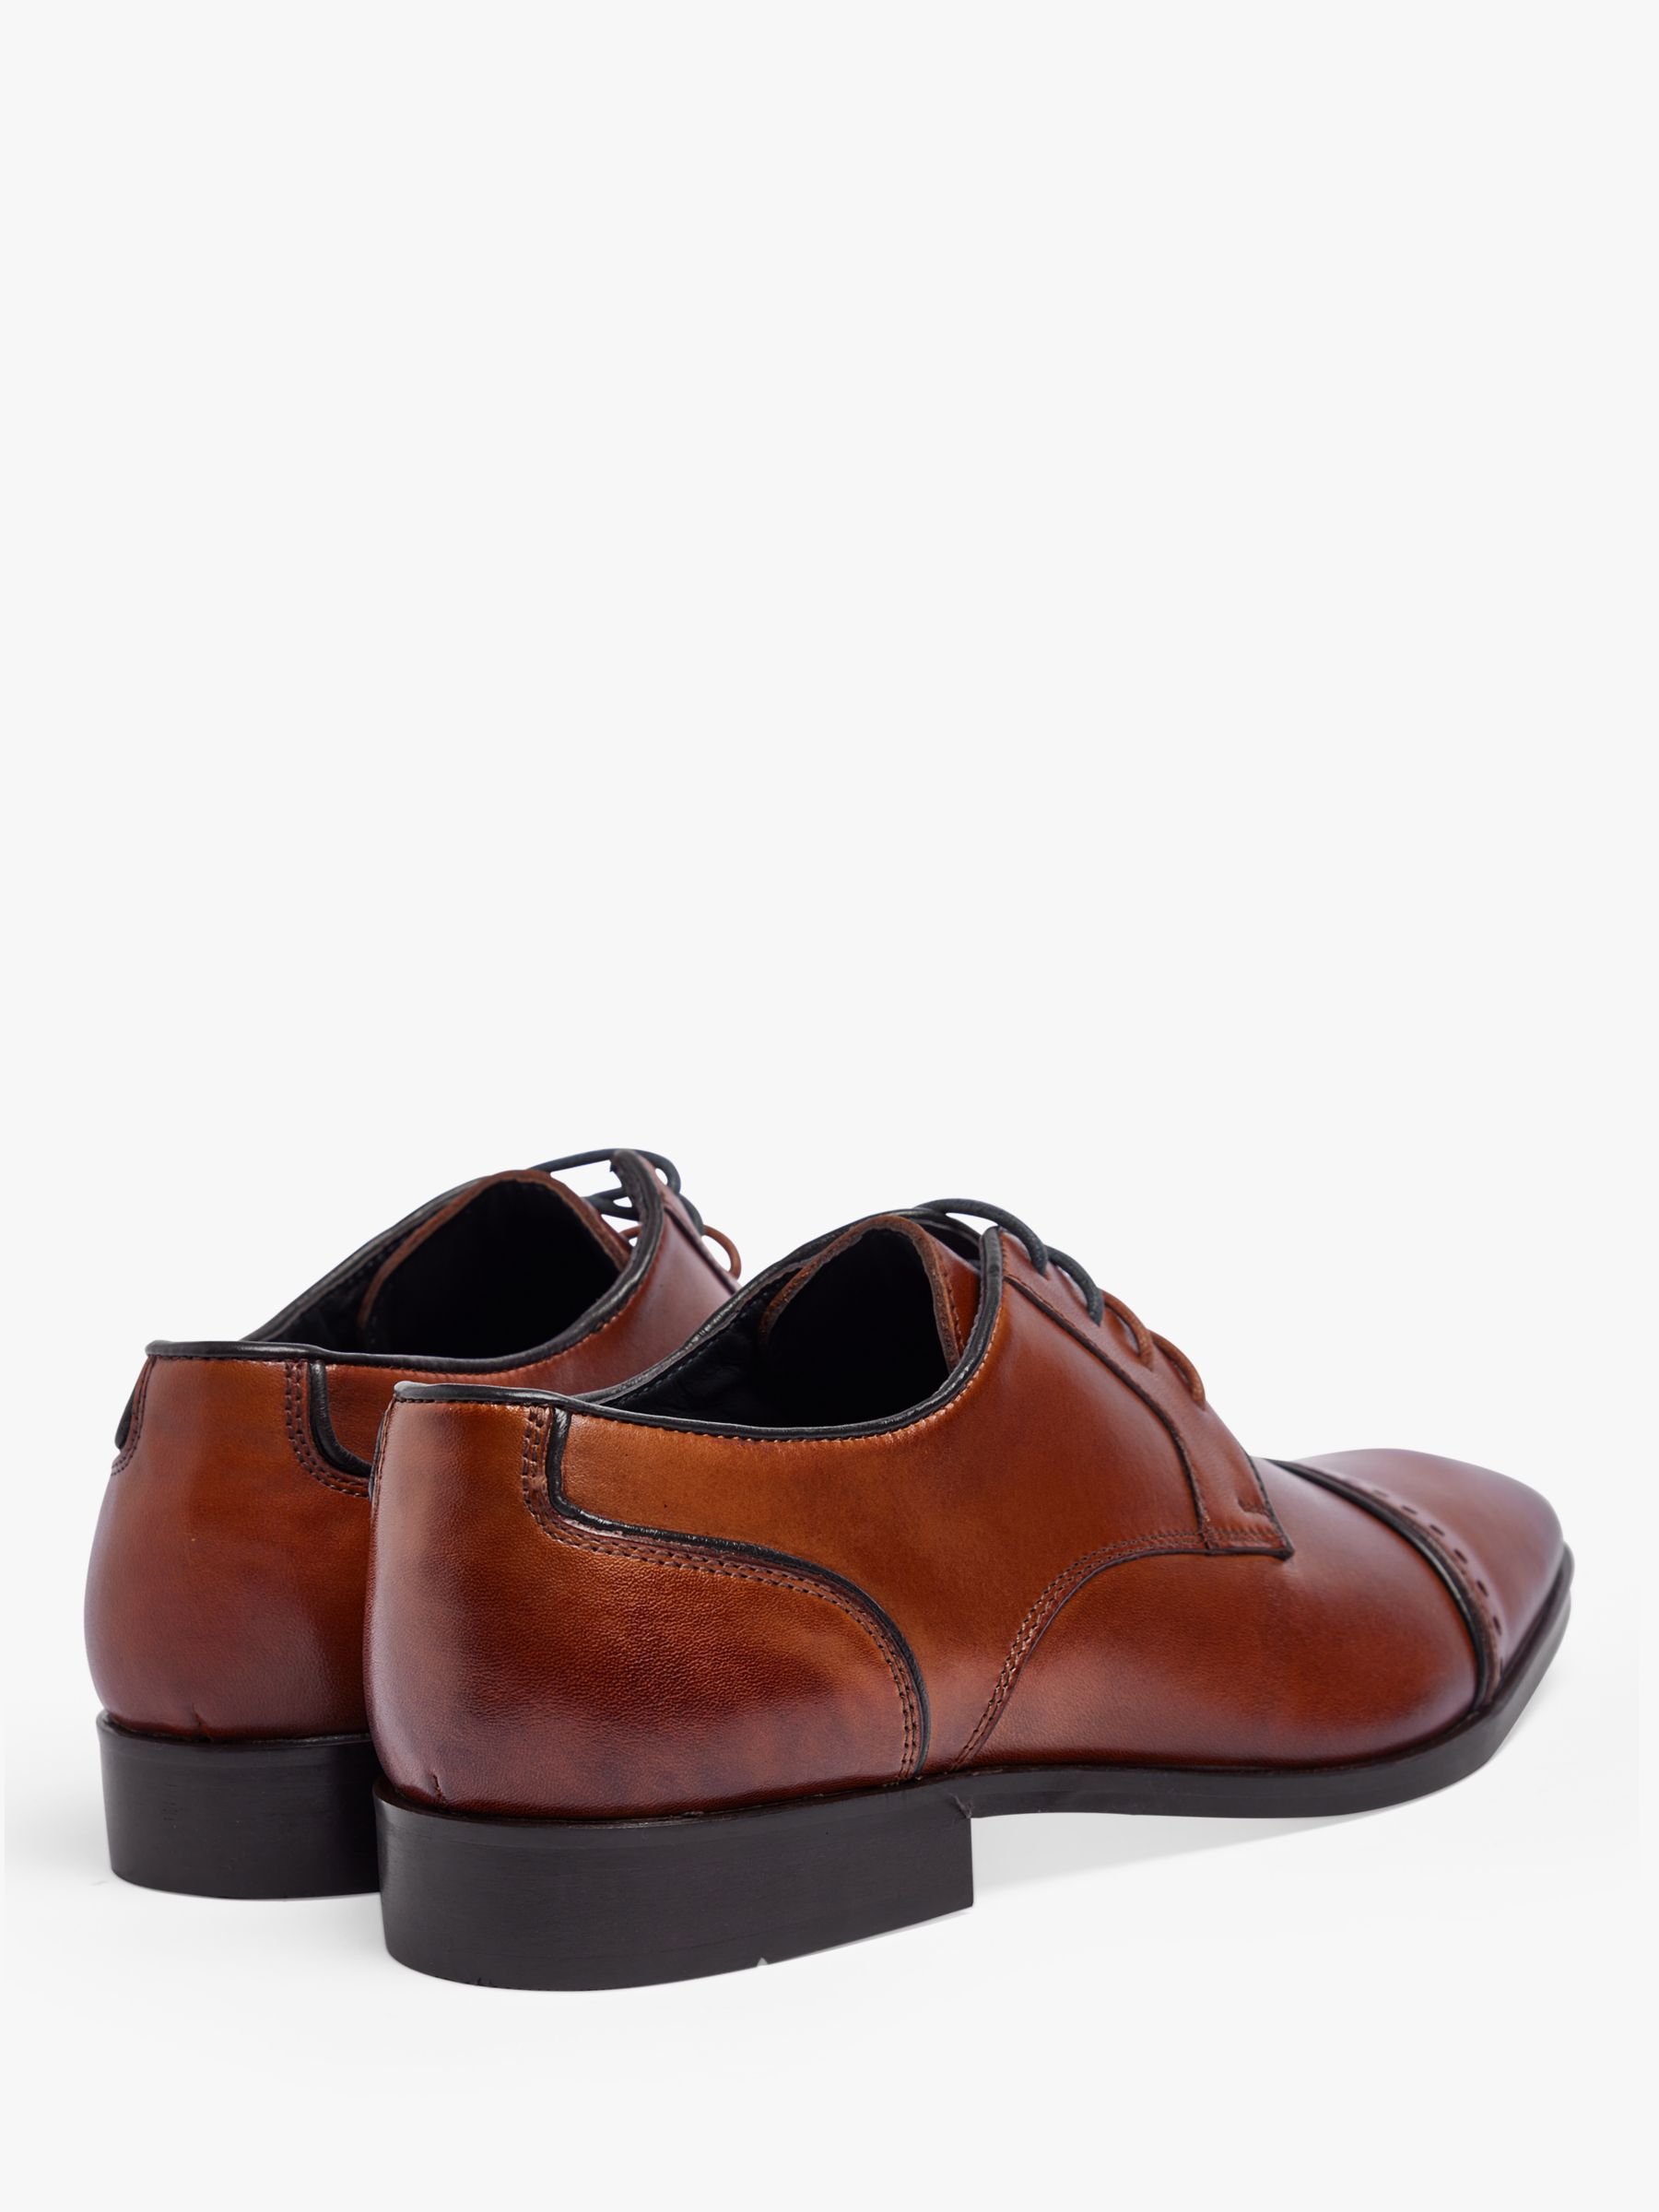 Pod Regus Leather Brogue Detail Shoes, Cognac at John Lewis & Partners